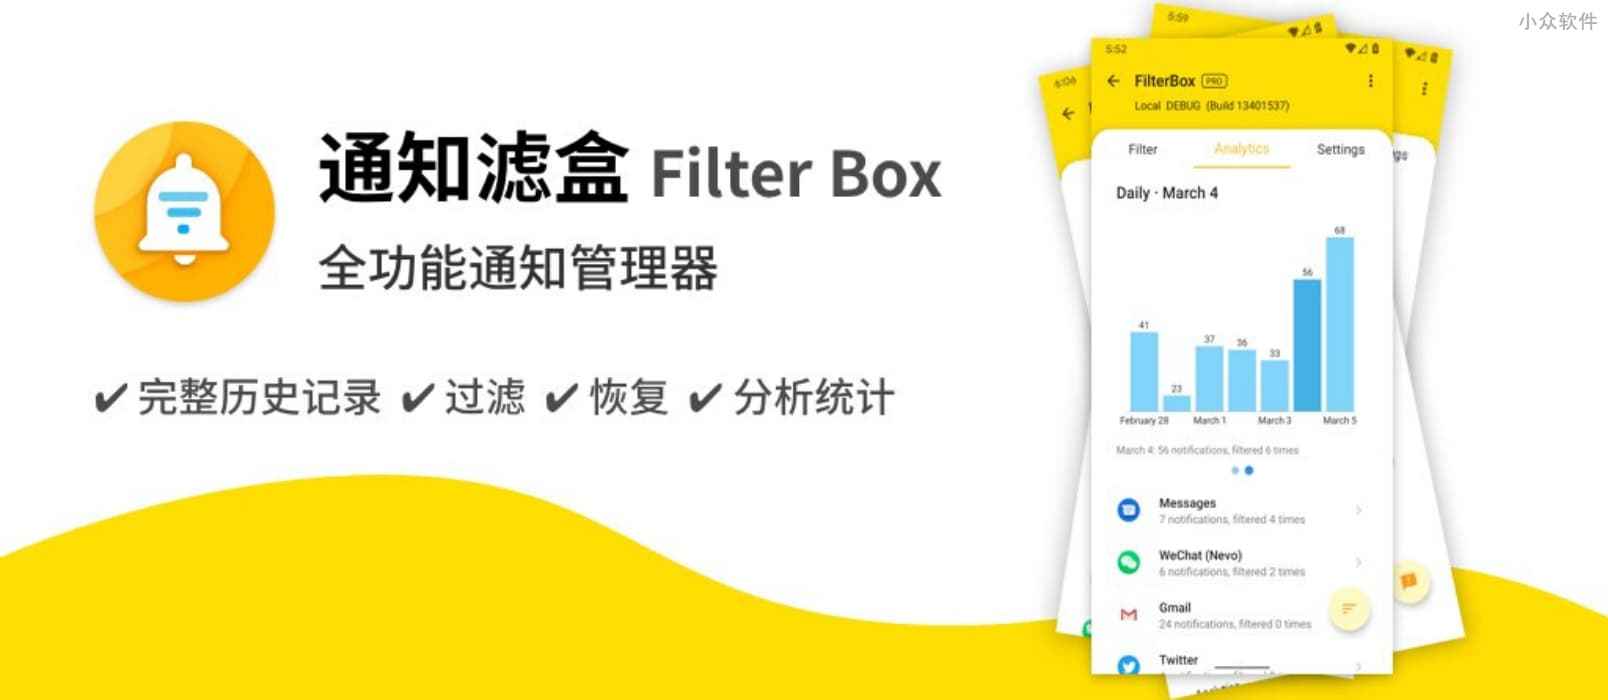 通知滤盒 Filter Box - 帮你保存、管理、统计所有的 Android 通知 1